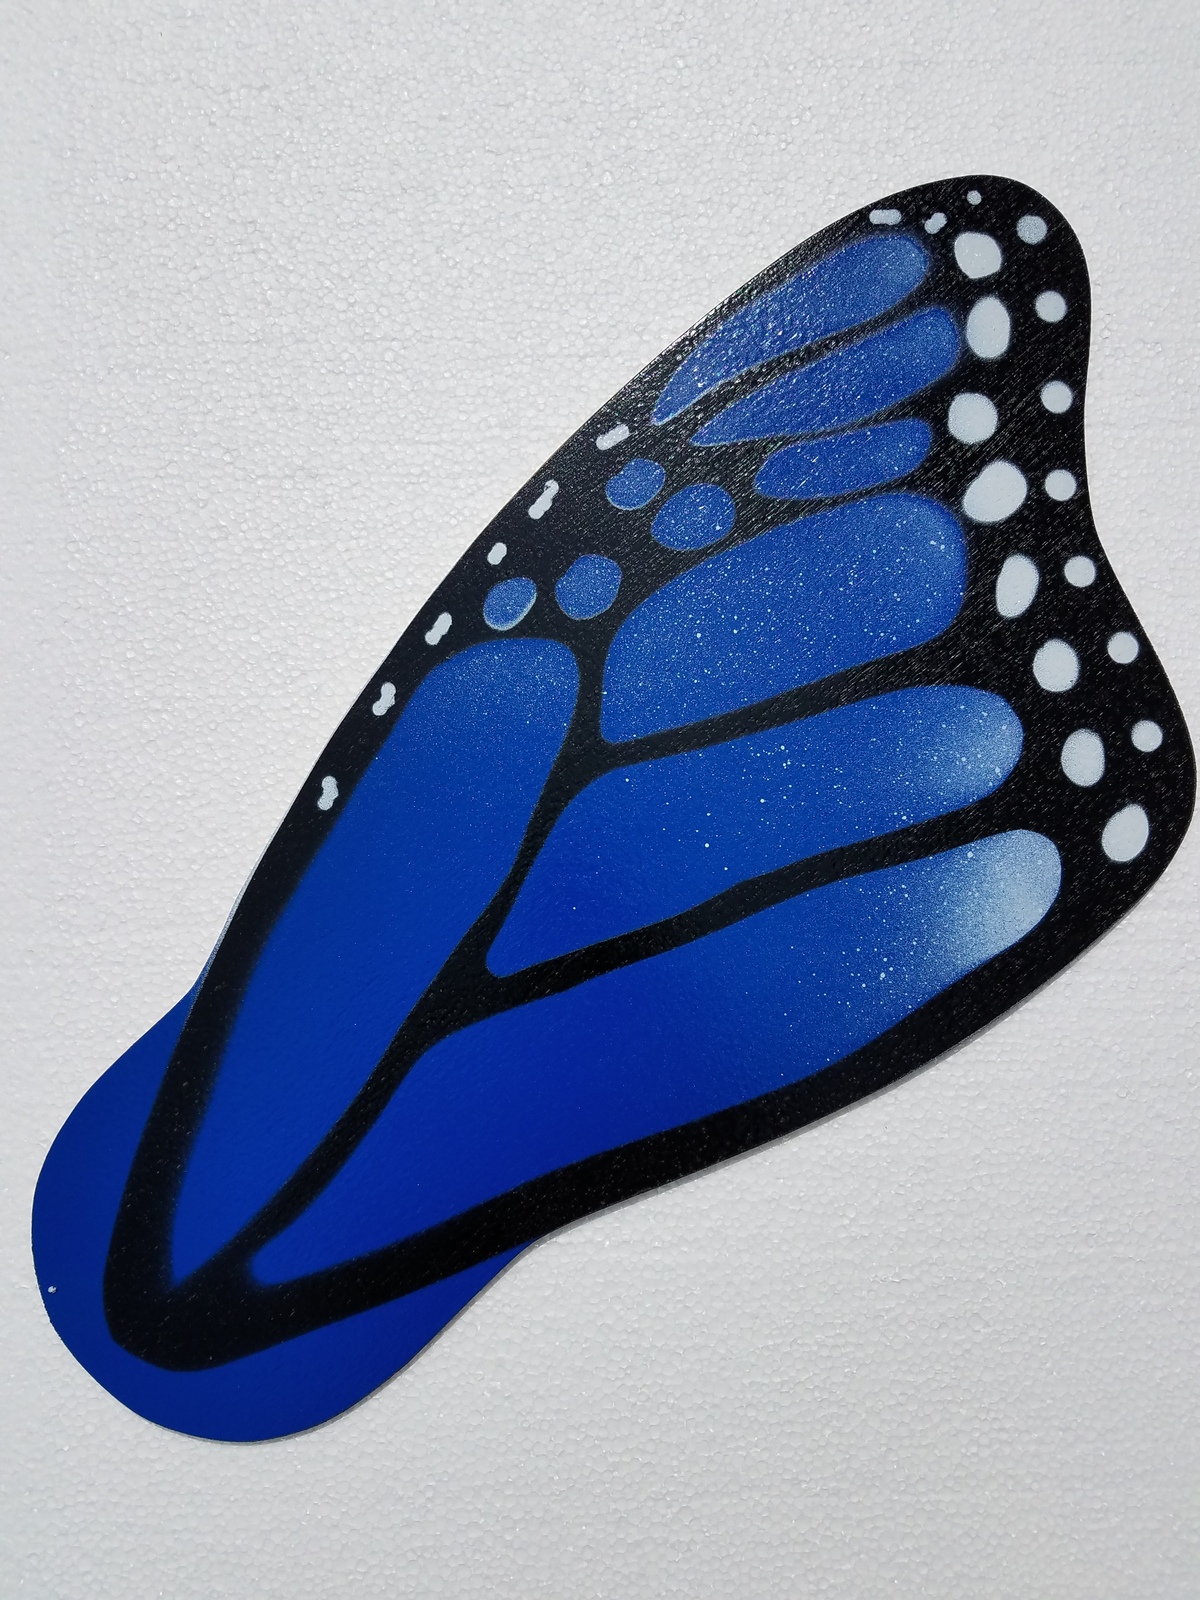 Blue monarch butterfly wing ceiling fan blades - $44.99